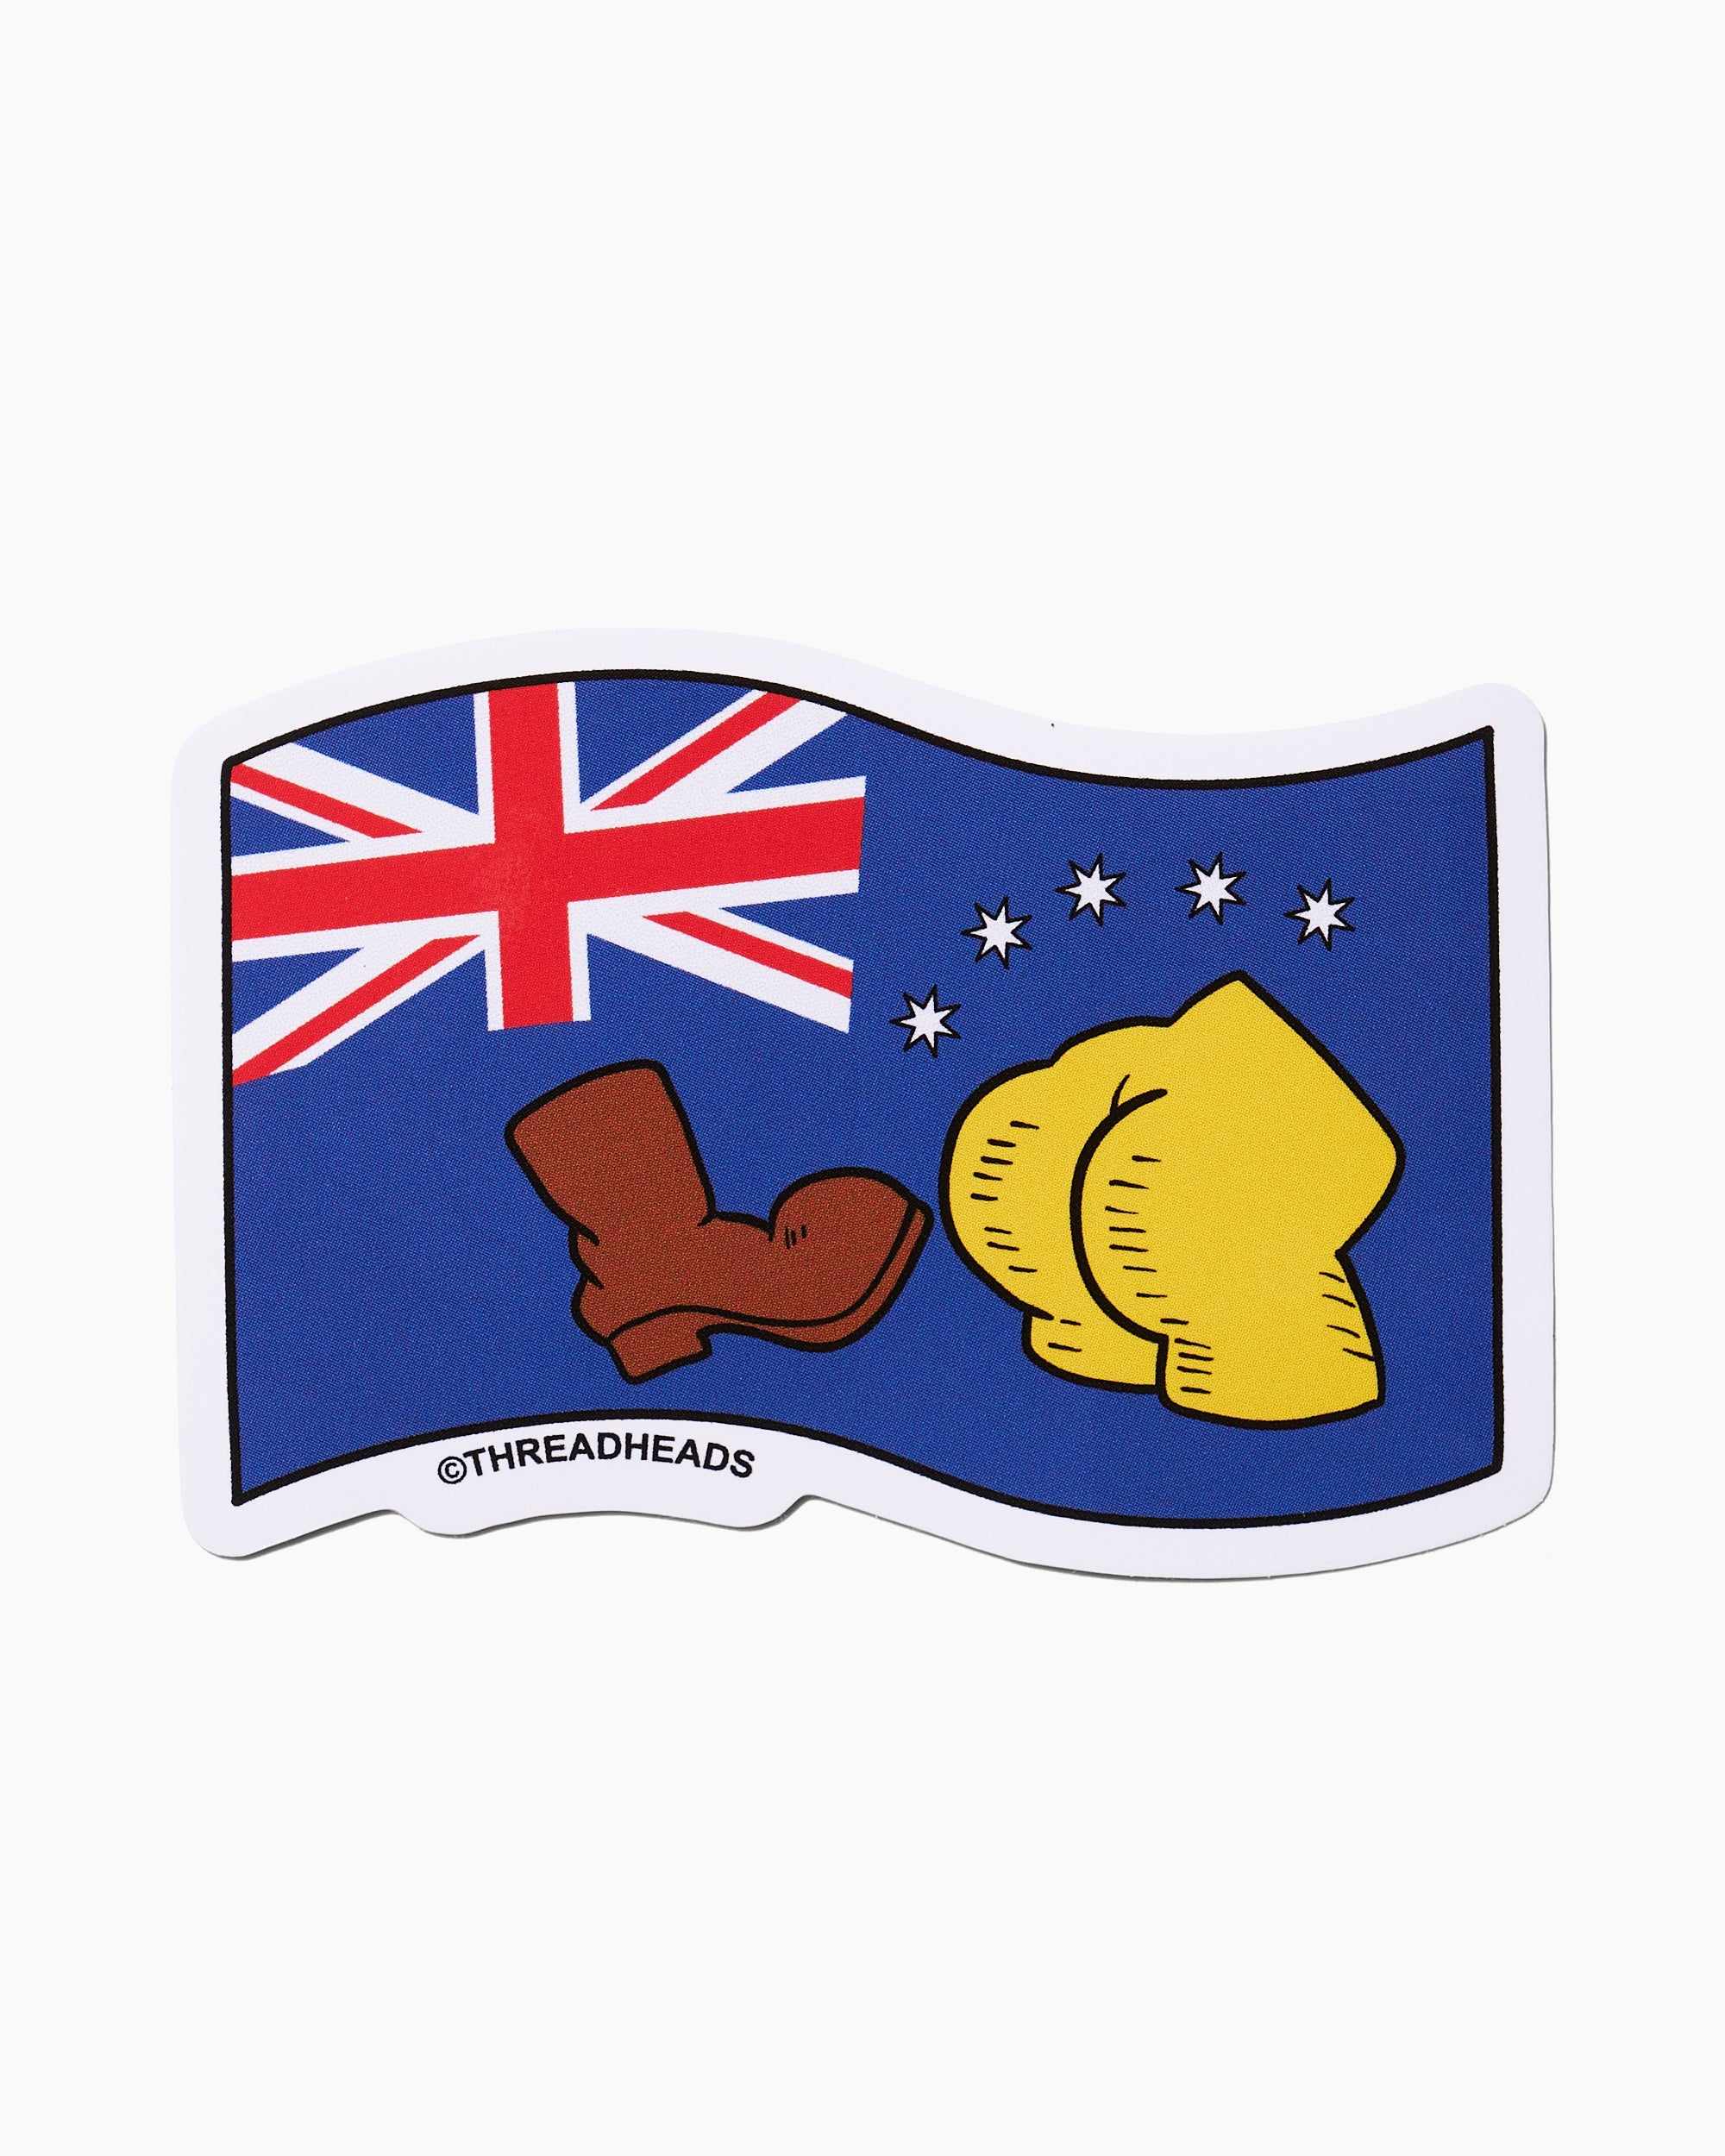 The Aussie Sticker Pack